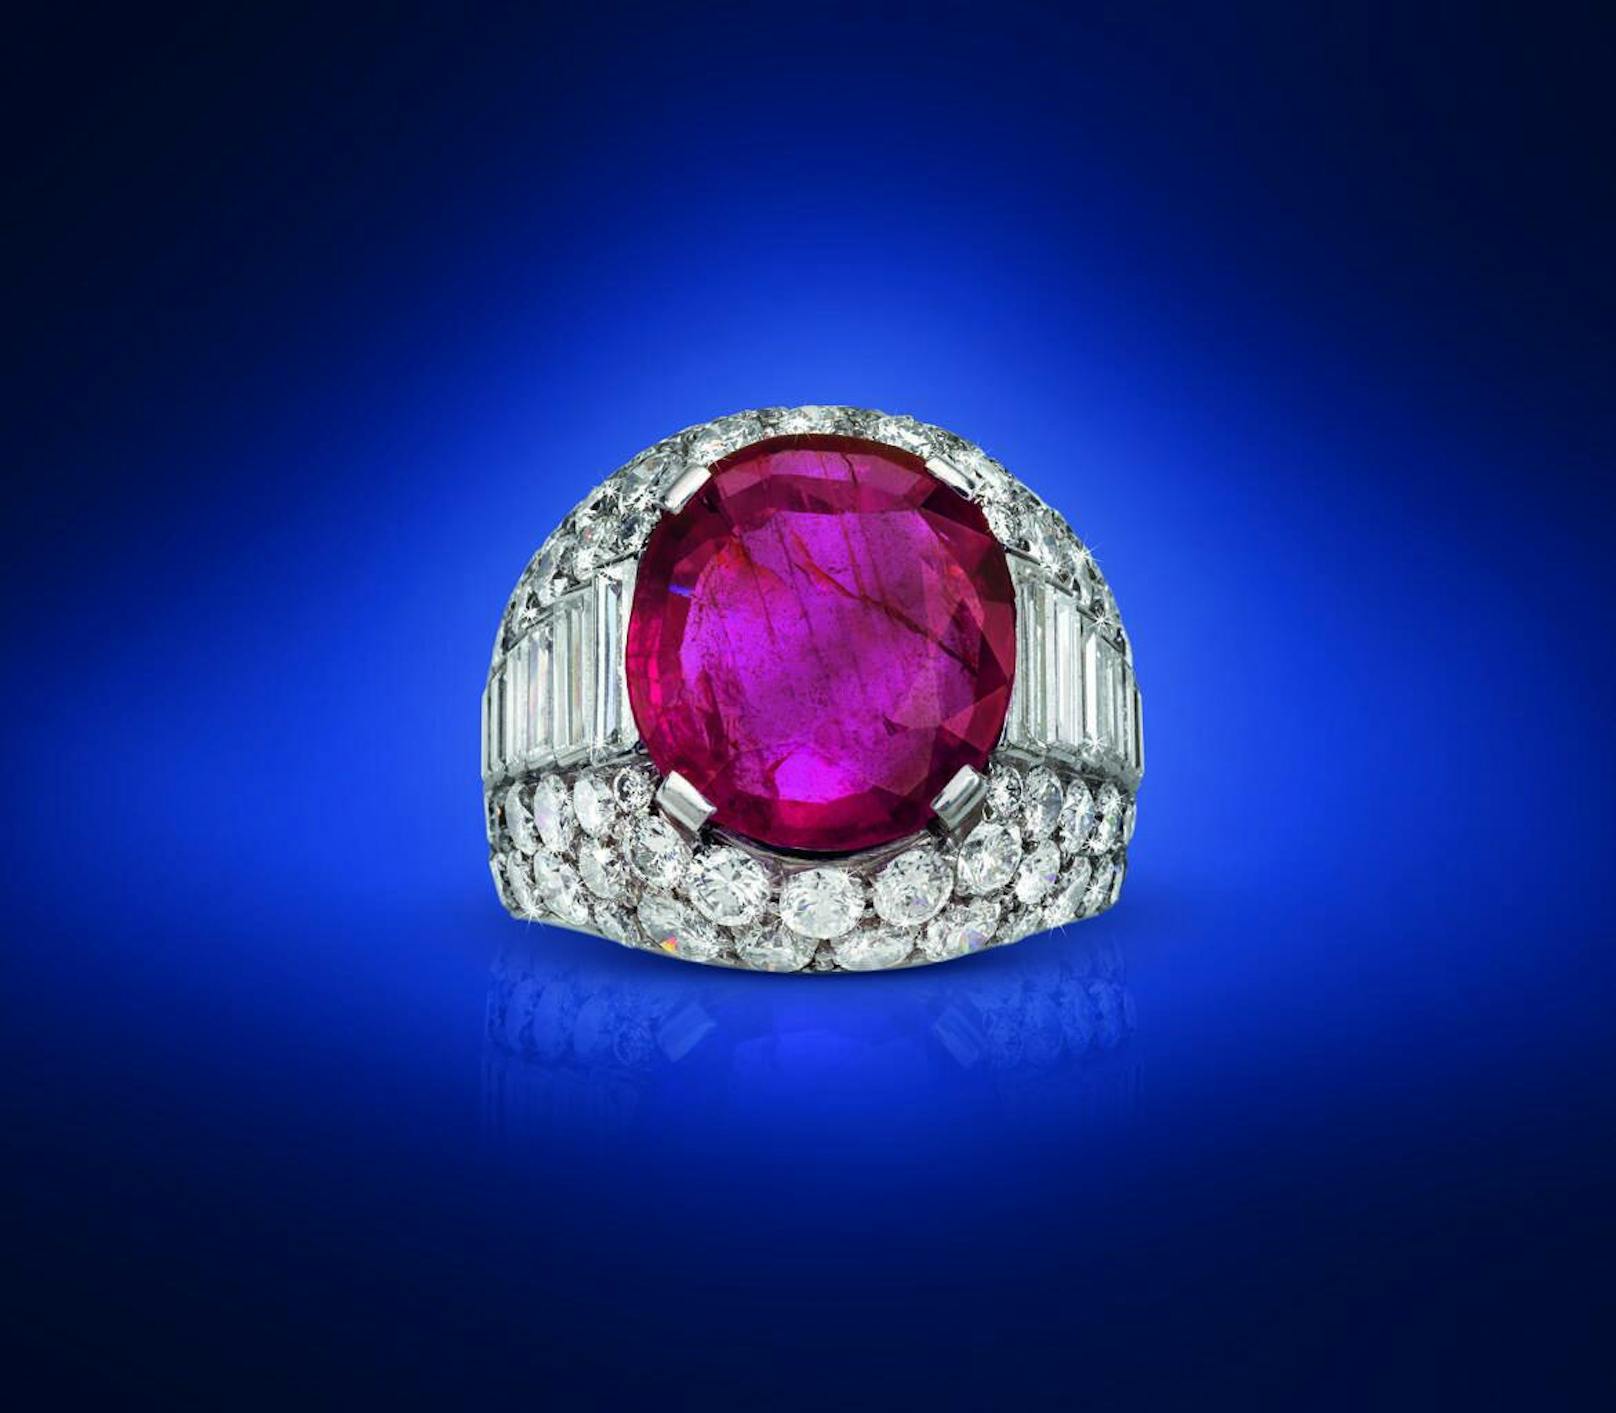 Dorotheum Auktion Juwelen (27.4.2017): 
Bulgari Ring Trombino mit unbehandeltem Burma-Rubin 6 ct. Schätzwert 60.000 bis 120.000 Euro